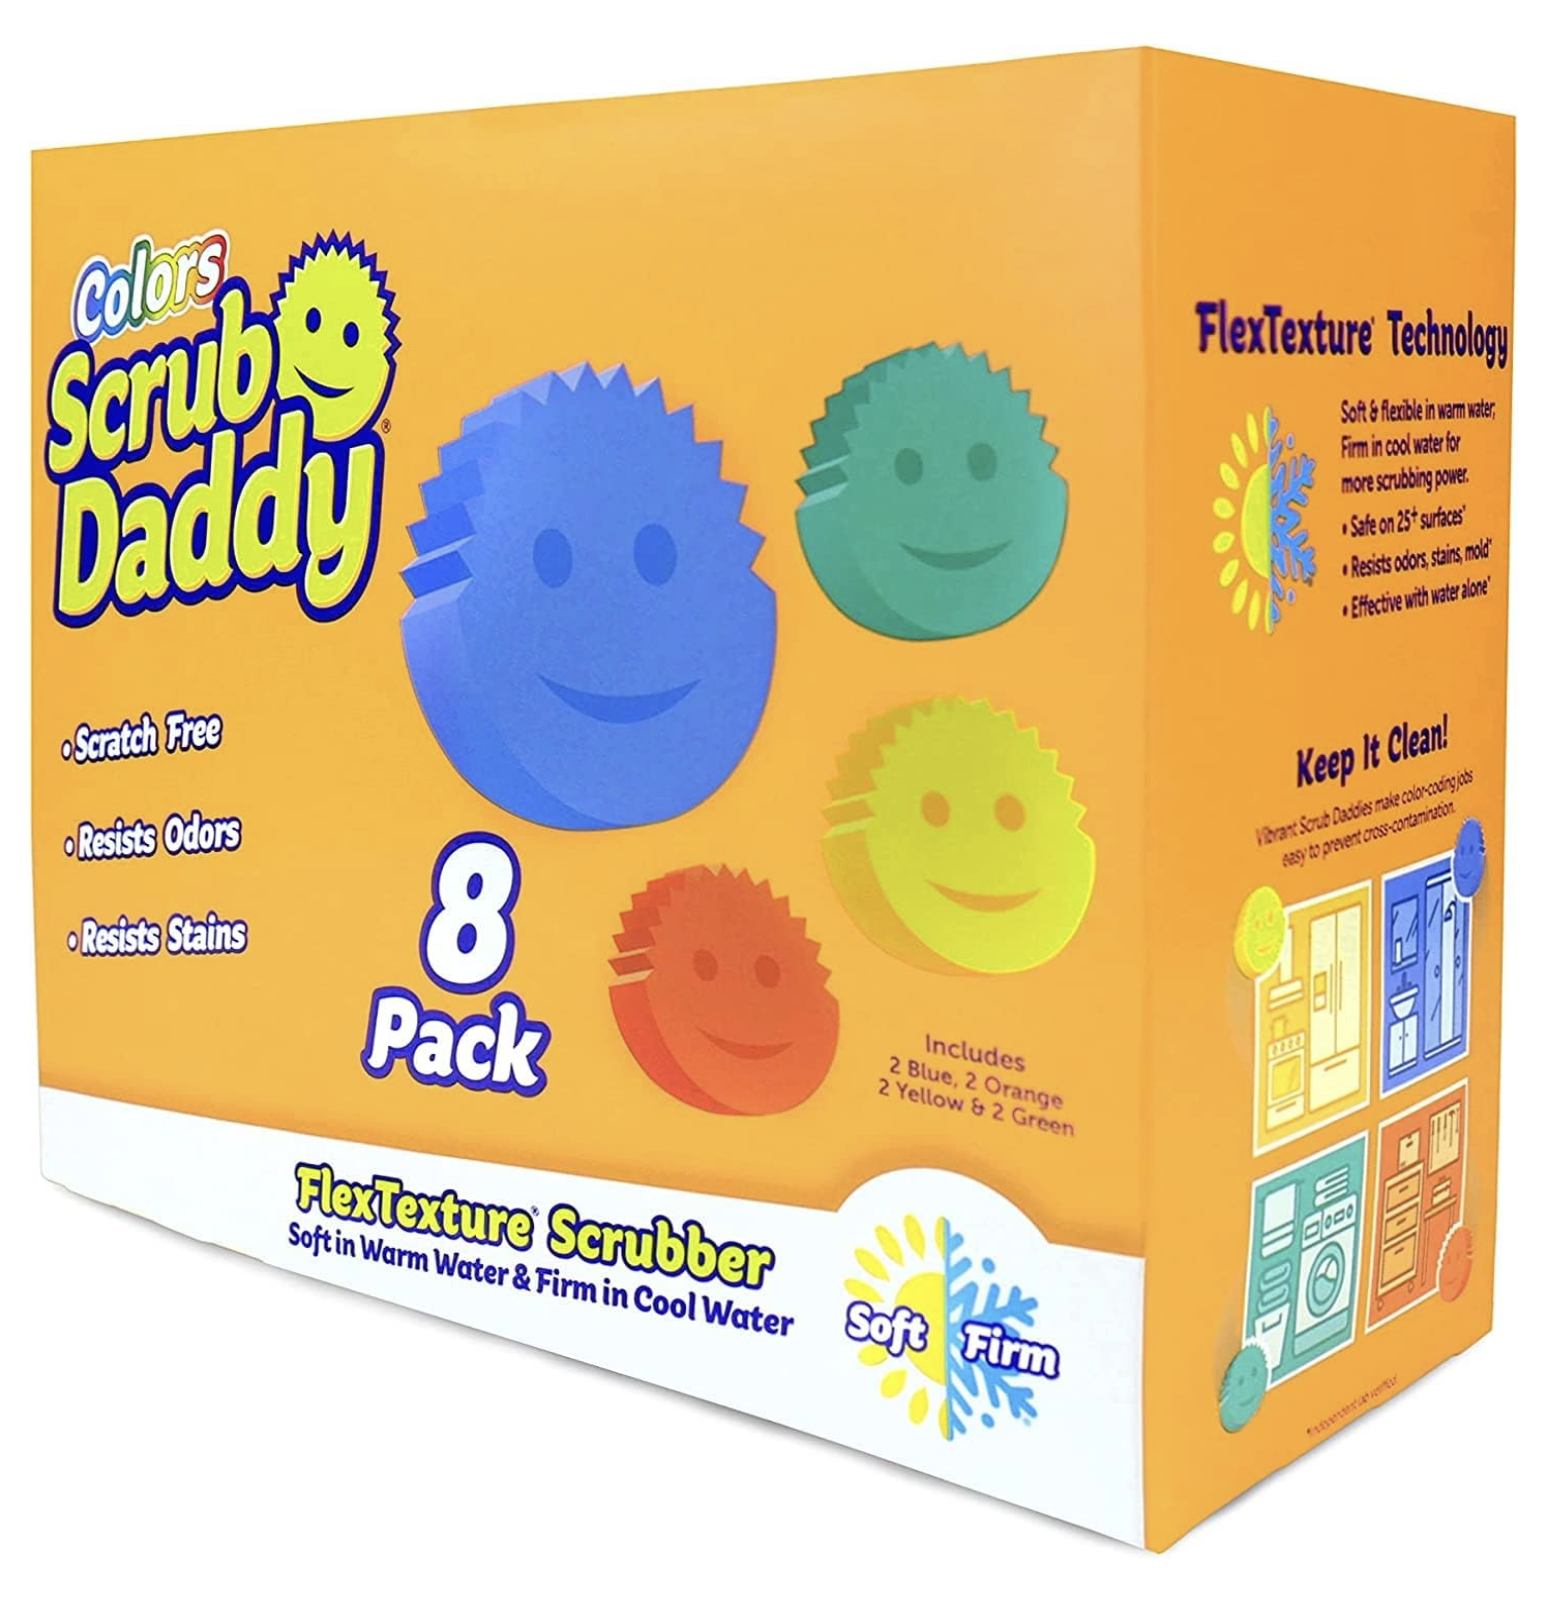 Scrub Mommy & Scrub Daddy Sponges • Ask Bronna